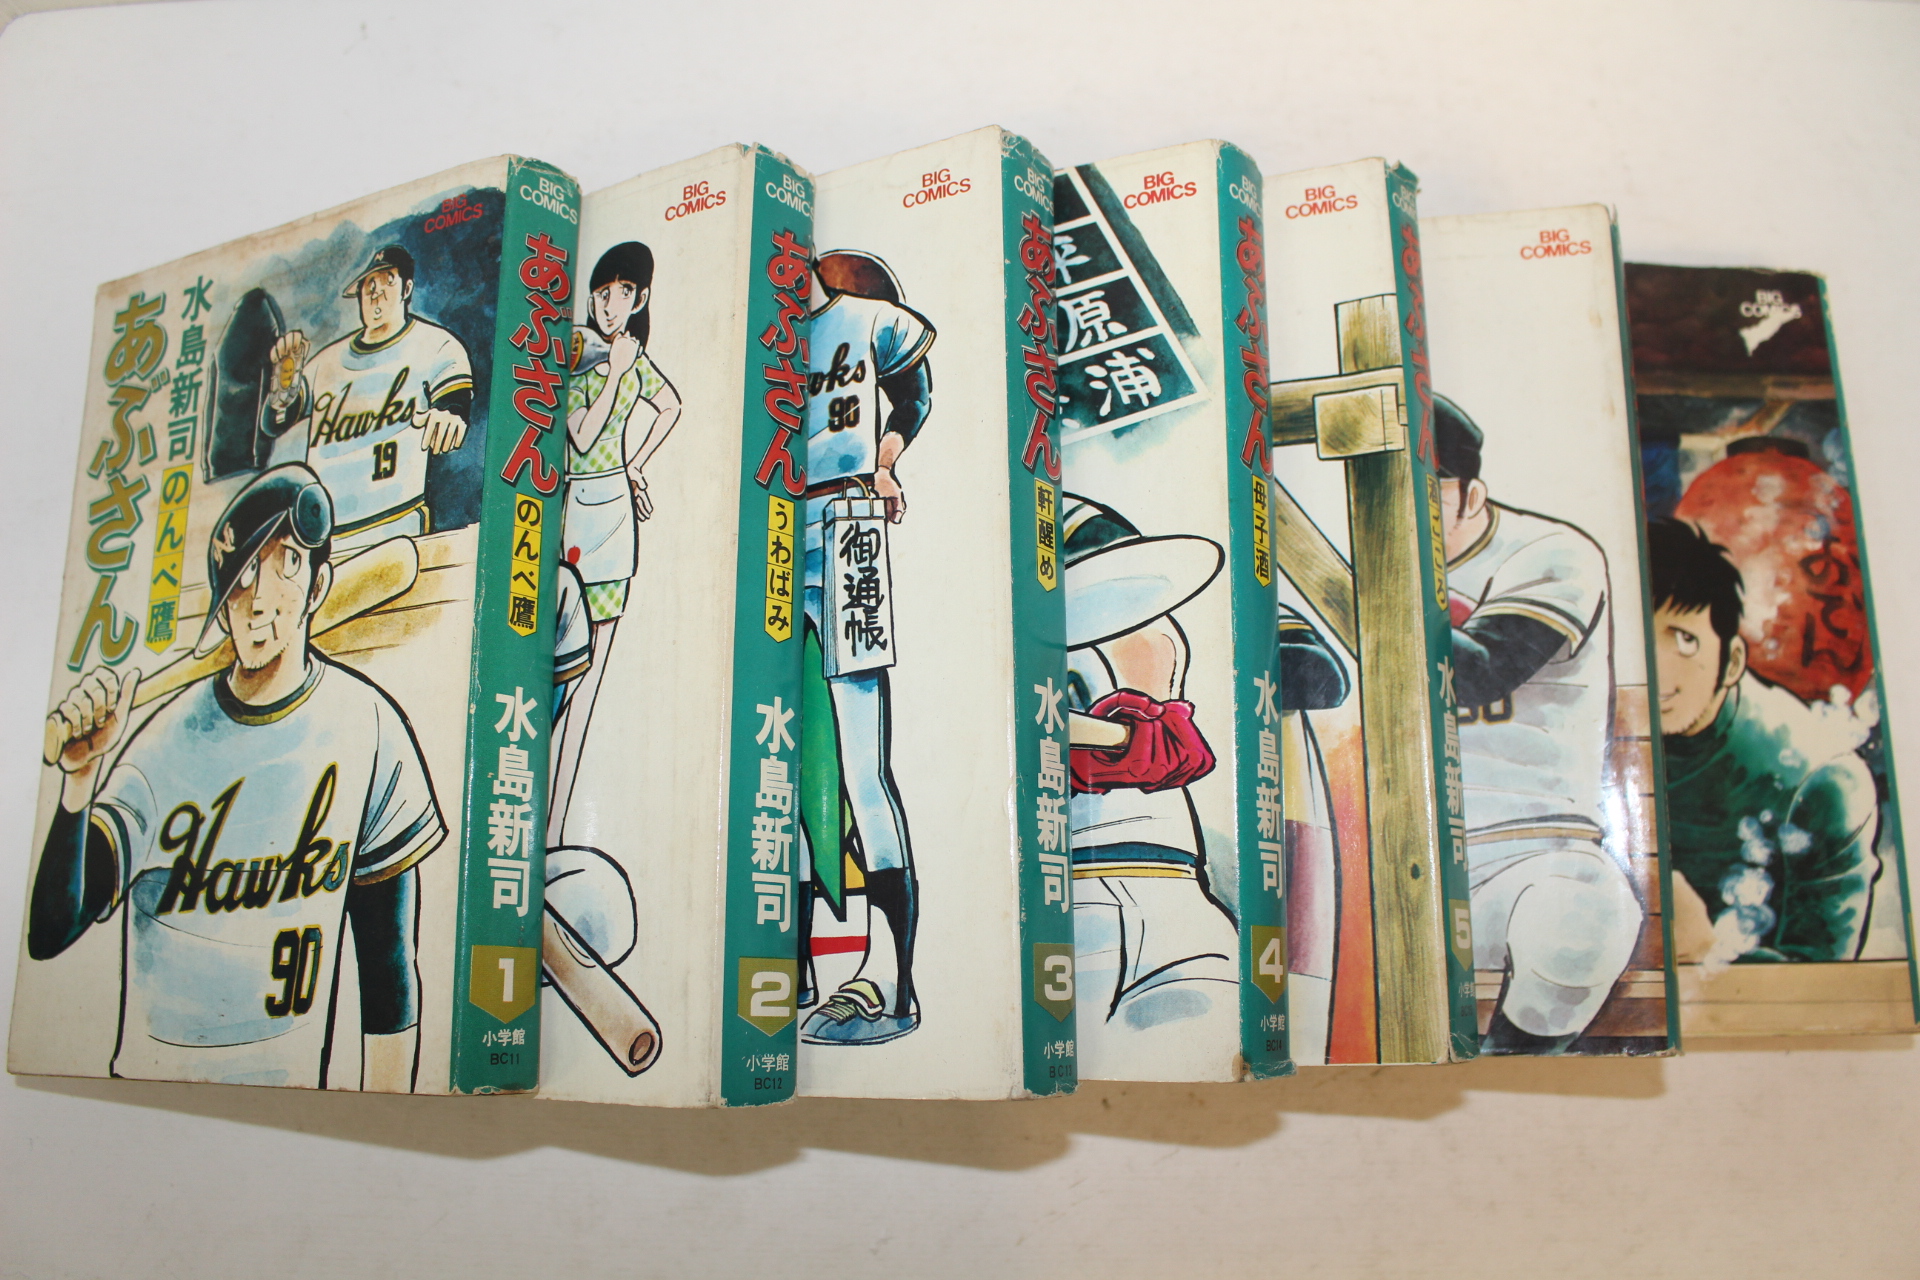 1976년(소화51년)초판 일본간행 미즈시마신지(水島新司) 만화 7책